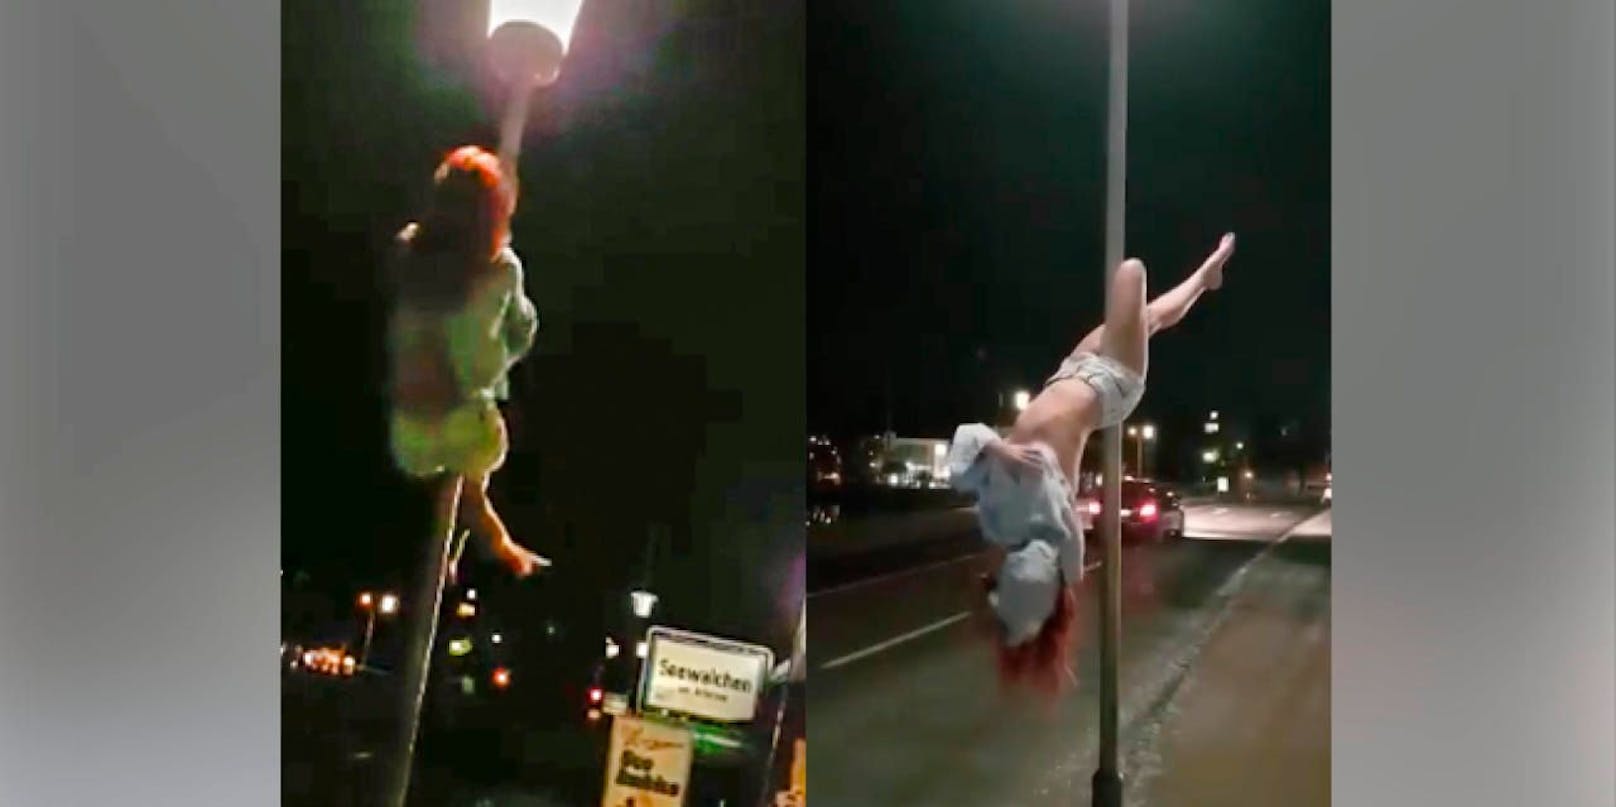 Straßenlaterne wird zu einer Pole-Dance-Stange